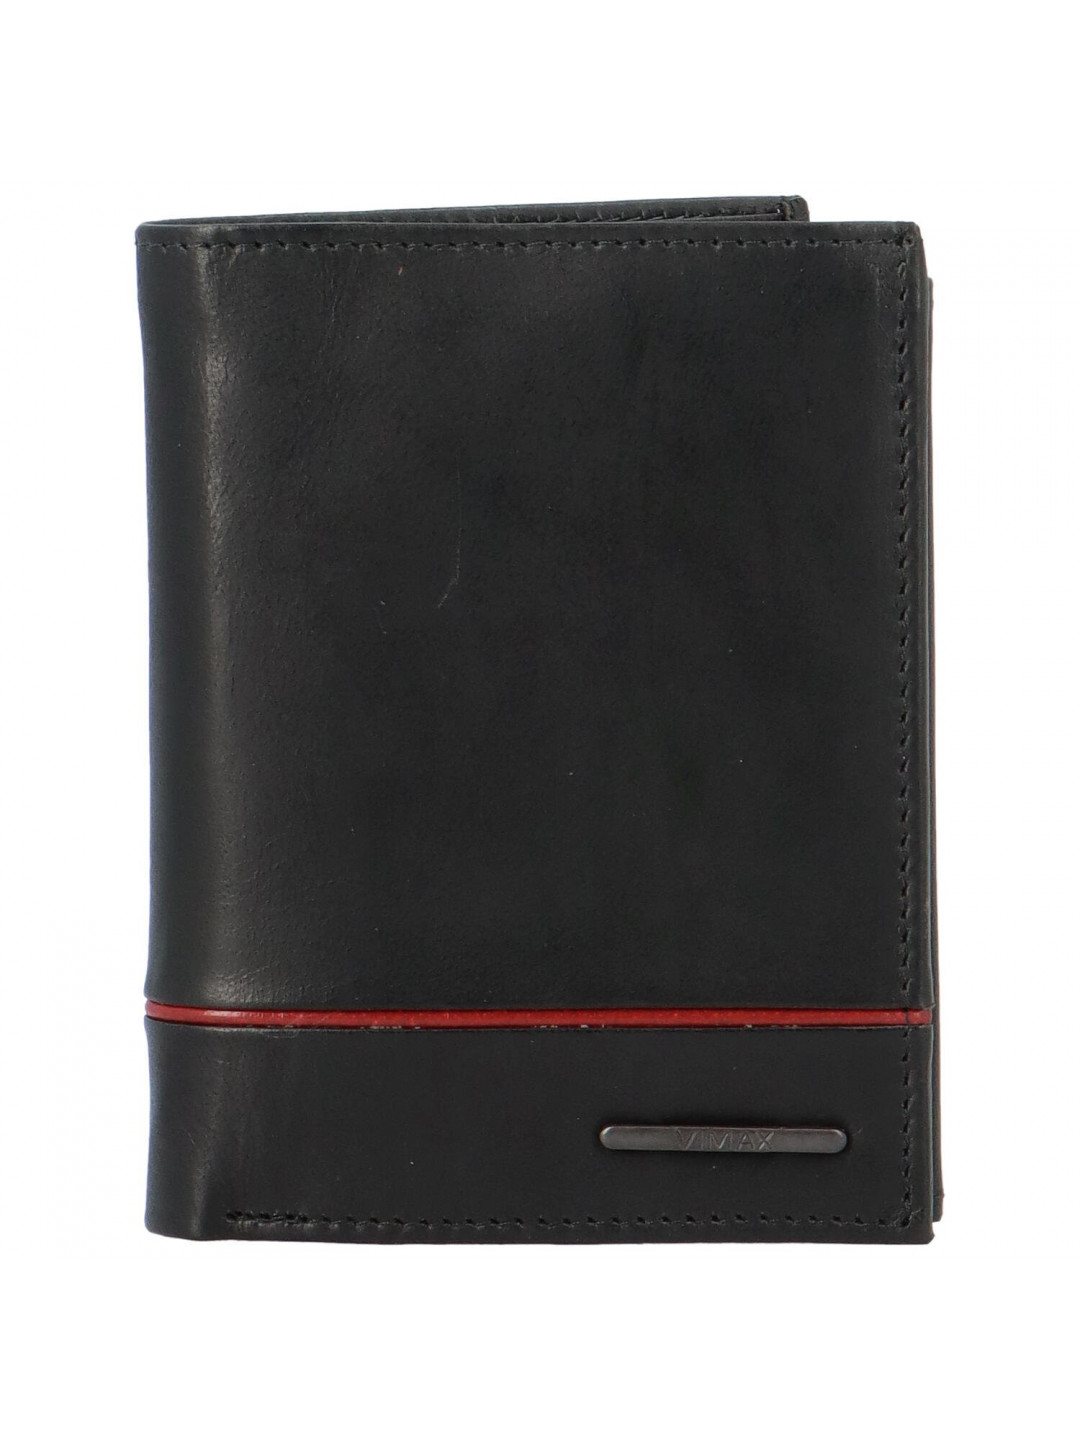 Pánská kožená peněženka černá – Vimax Xerons